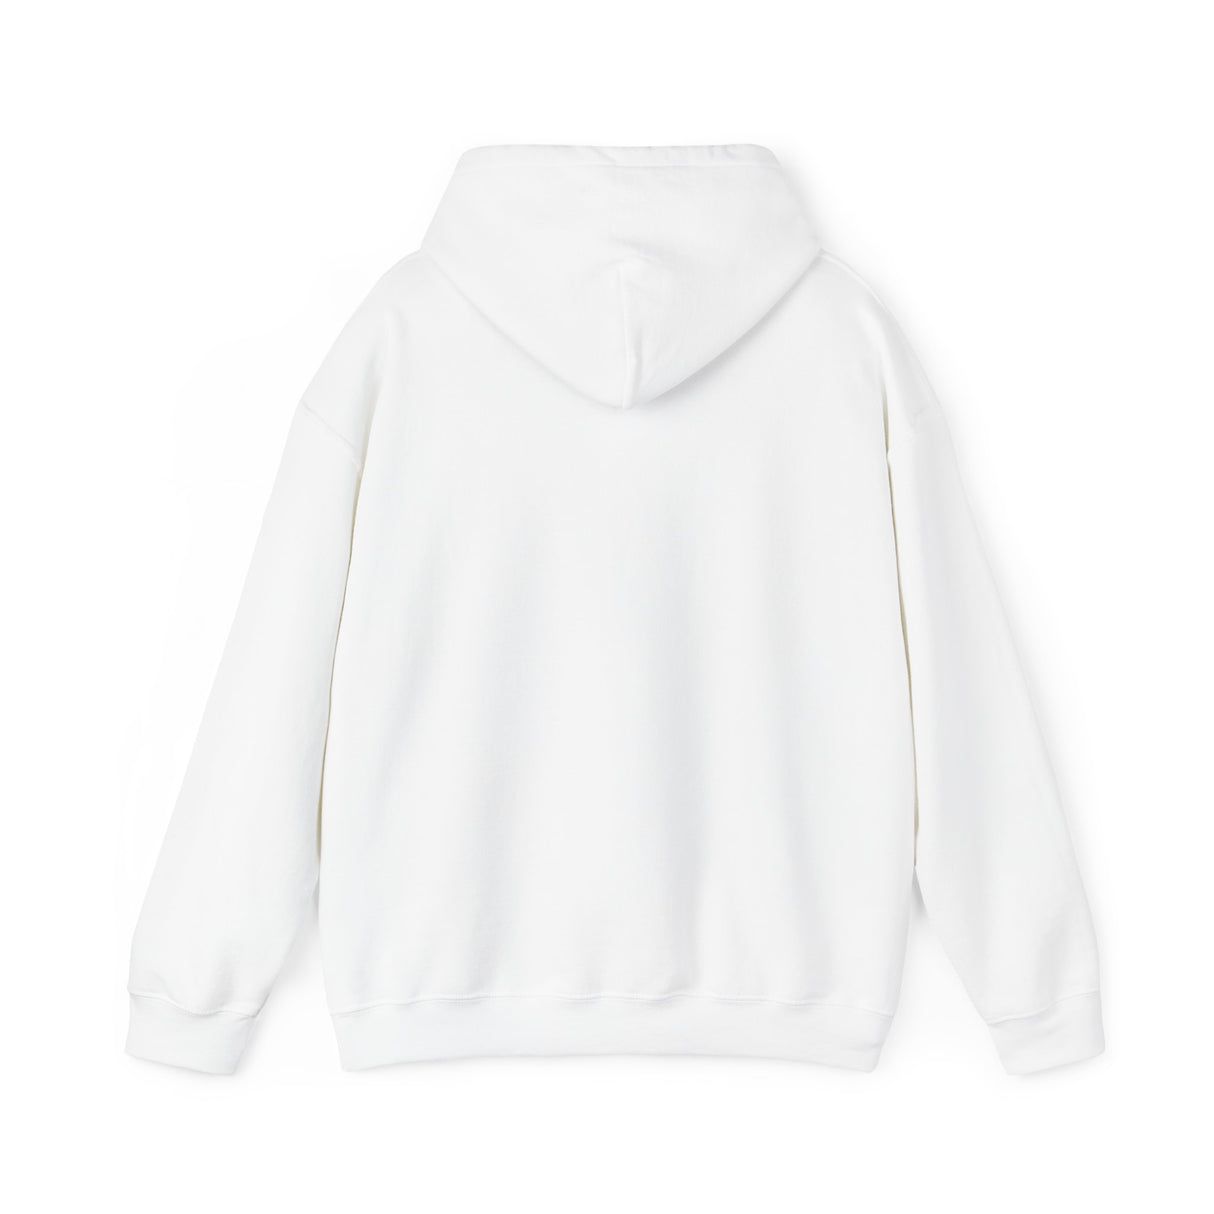 Duck fiabetes - Unisex Heavy Blend™ Hooded Sweatshirt